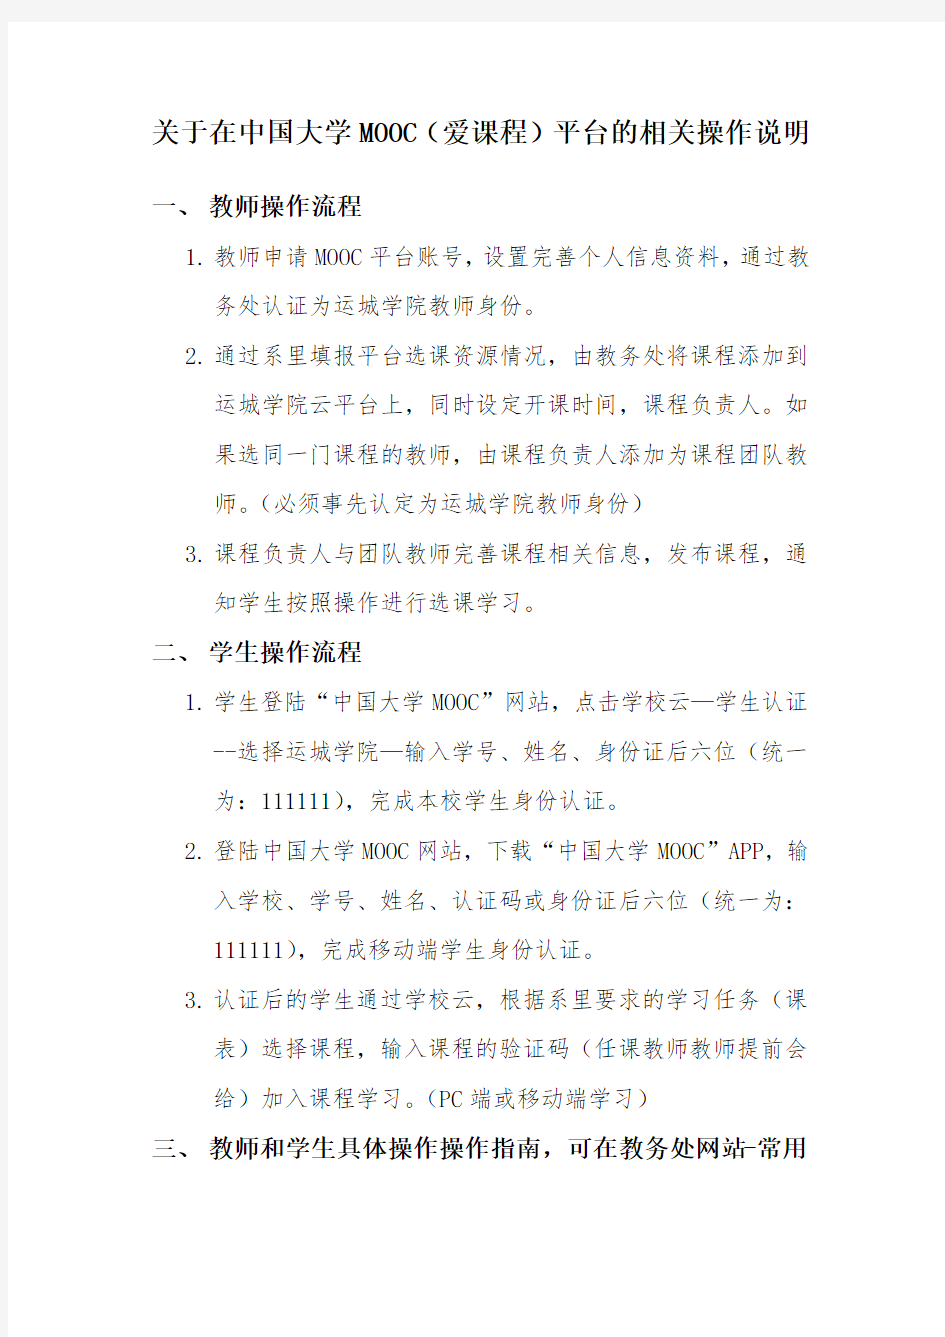 关于在中国大学MOOC(爱课程)平台的相关操作说明